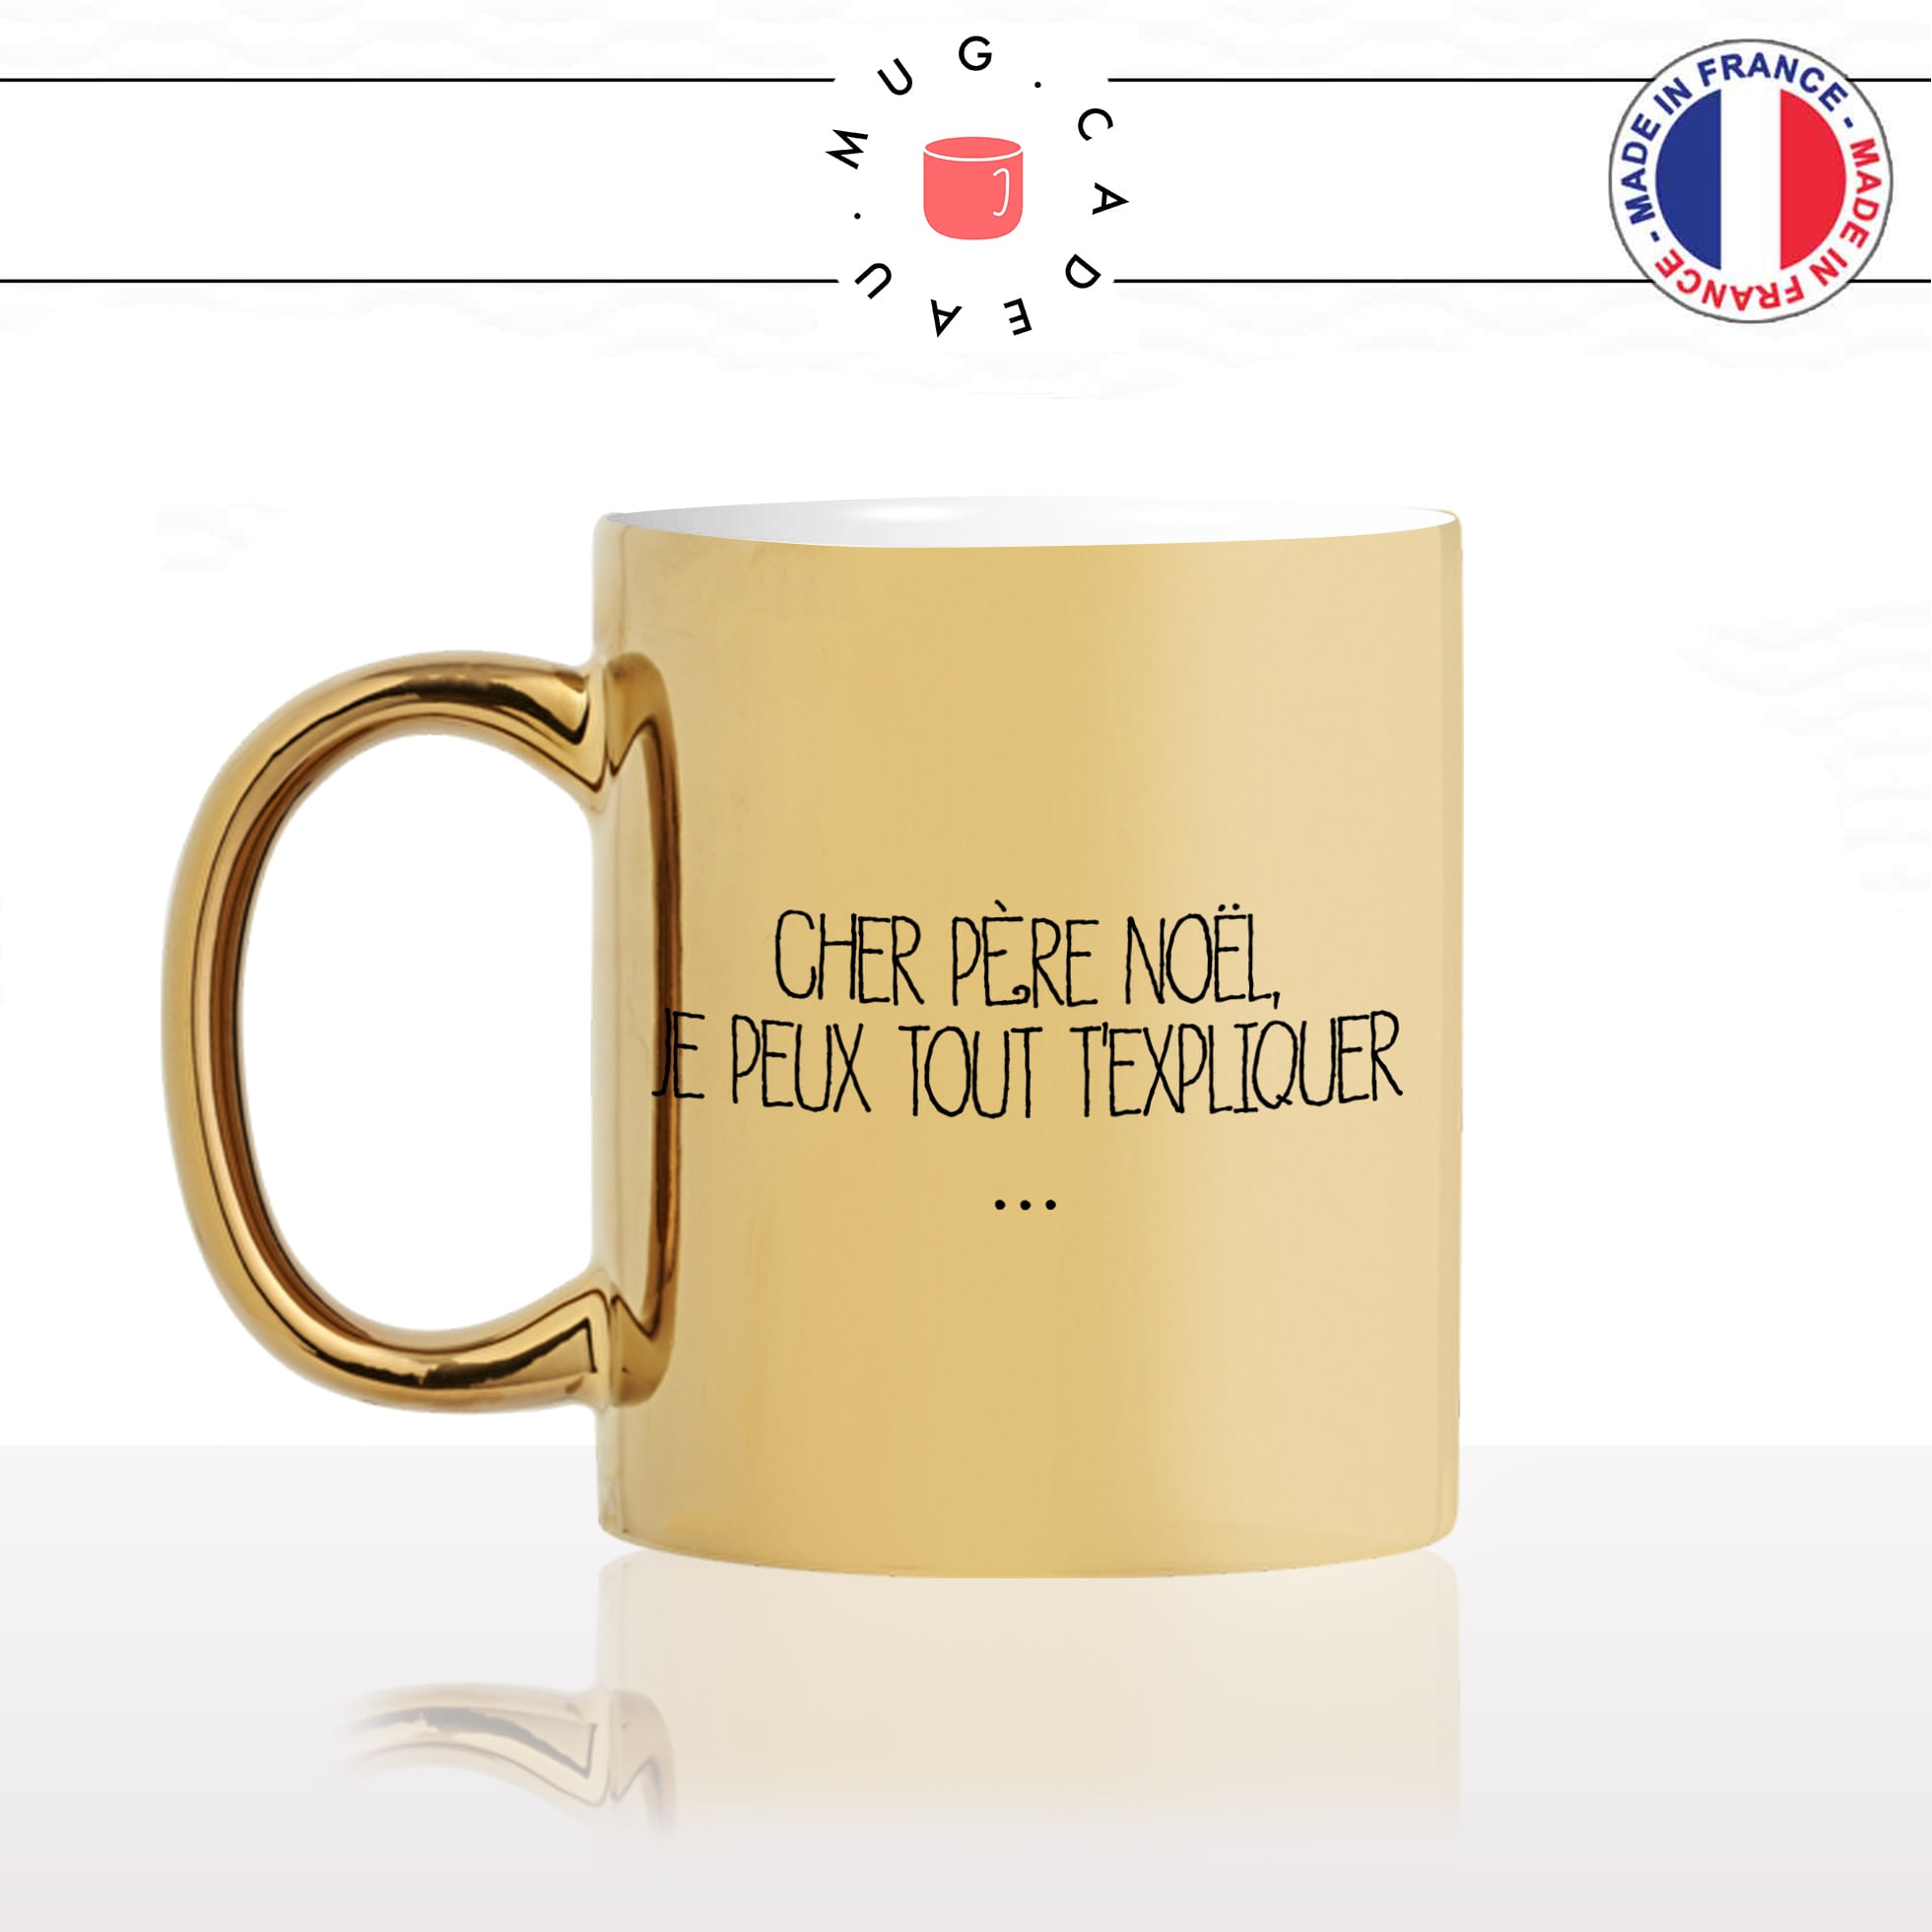 mug-tasse-gold-or-doré-cher-père-noel-je-peux-tout-texpliquer-hiver-chocolat-chaud-humour-original-fun-idée-cadeau-personnalisé-café-thé-min